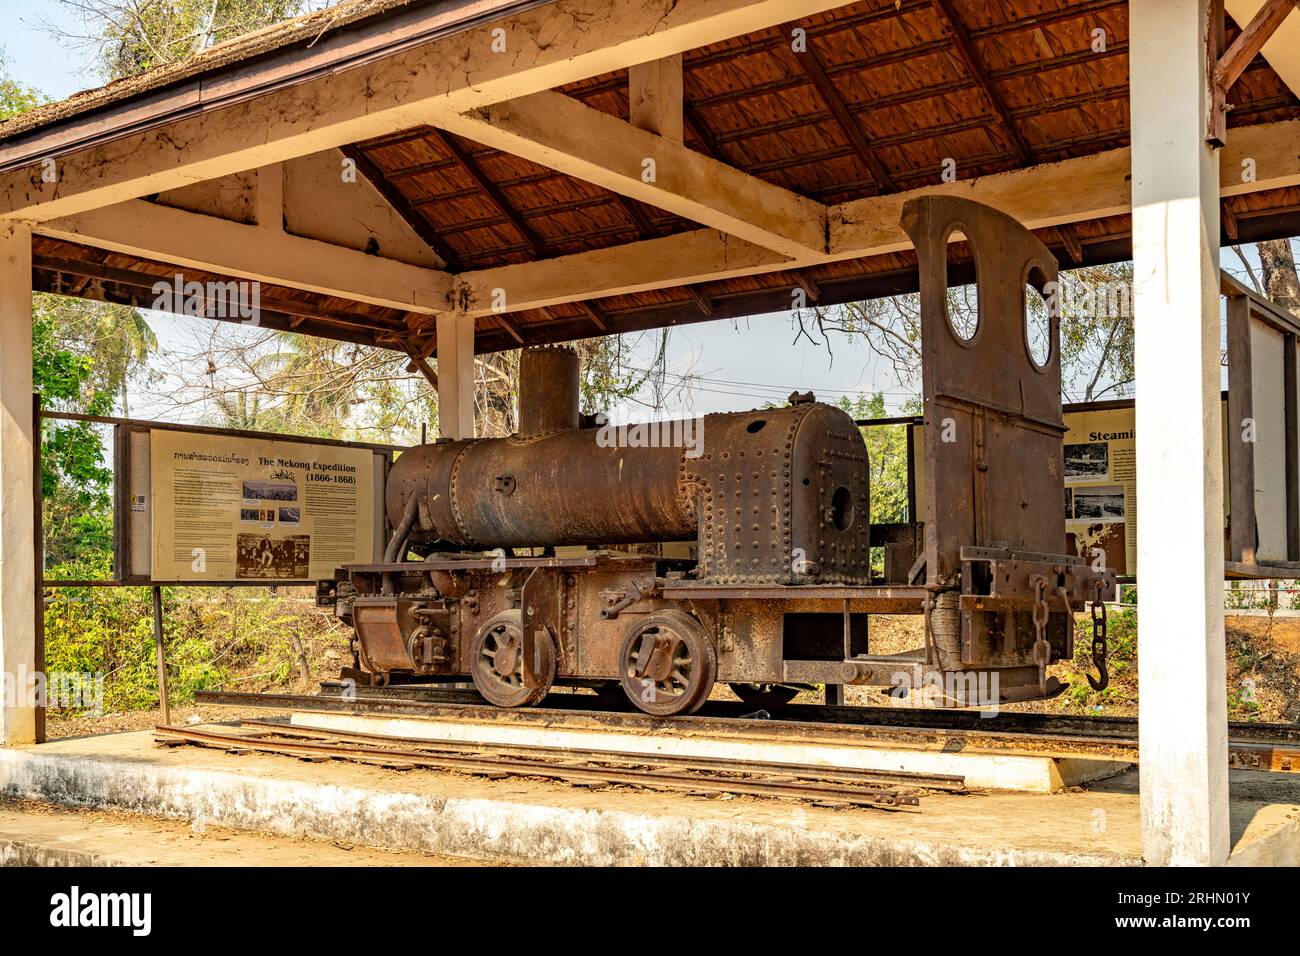 Historische Dampflokomotive Eloïse der alten Schmalspurbahn auf den Inseln Don Det und Don Khon, Si Phan Don, Provinz Champasak, Laos, Asien  |  Histo Stock Photo